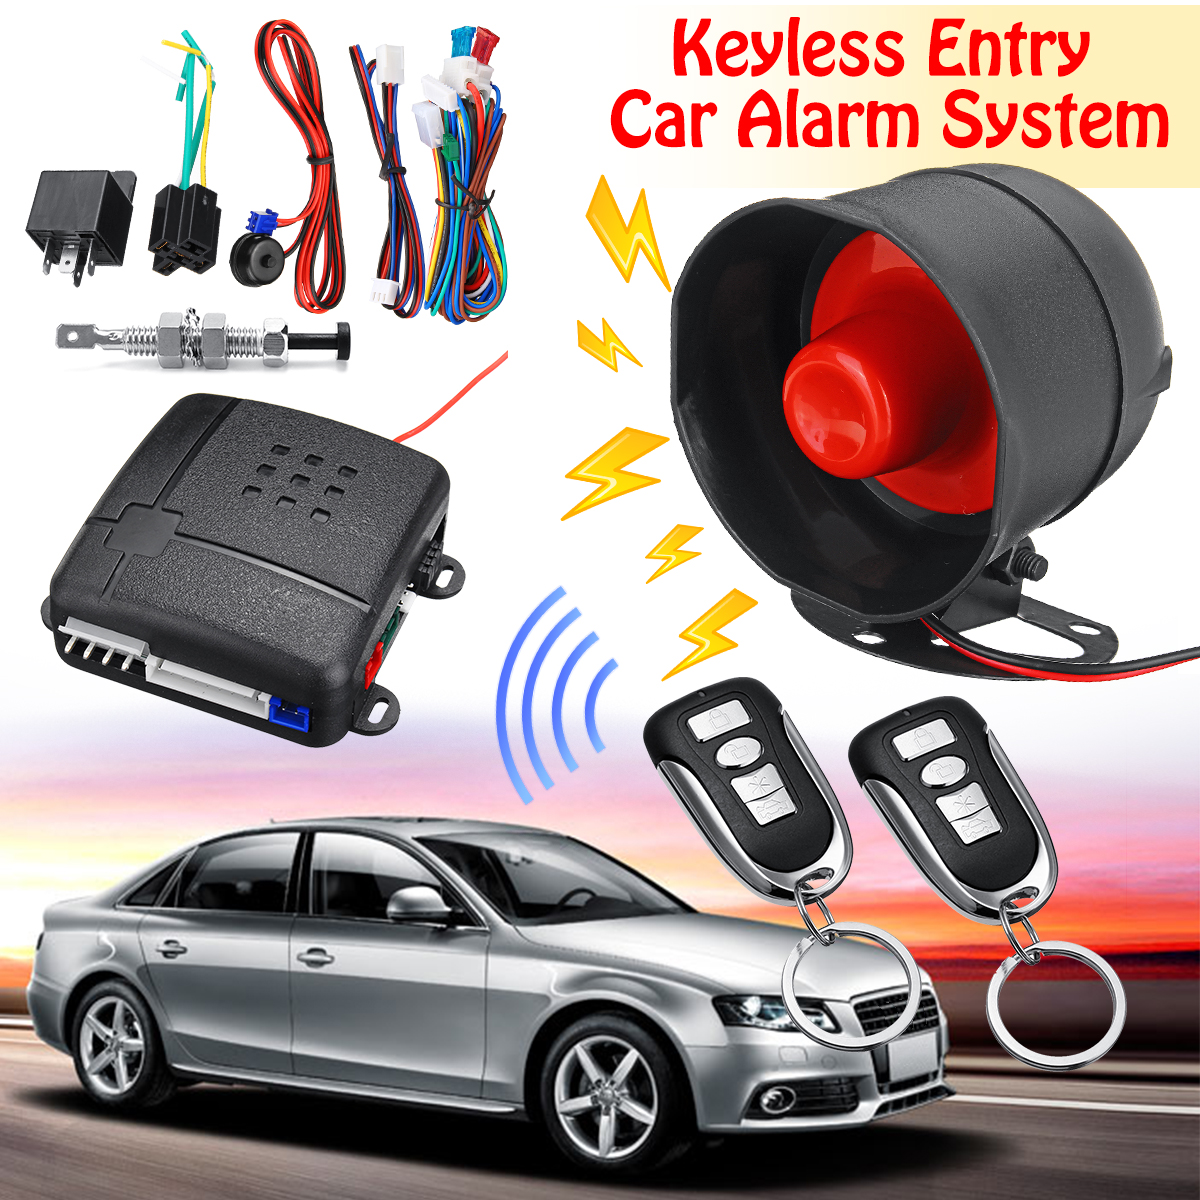 Аларм купить. IMEDI car Alarm сигнализация 2008 года. Сигнализация professional Alarm автомобильга. Car Keyless entry System. Alarm System наклейка на авто.